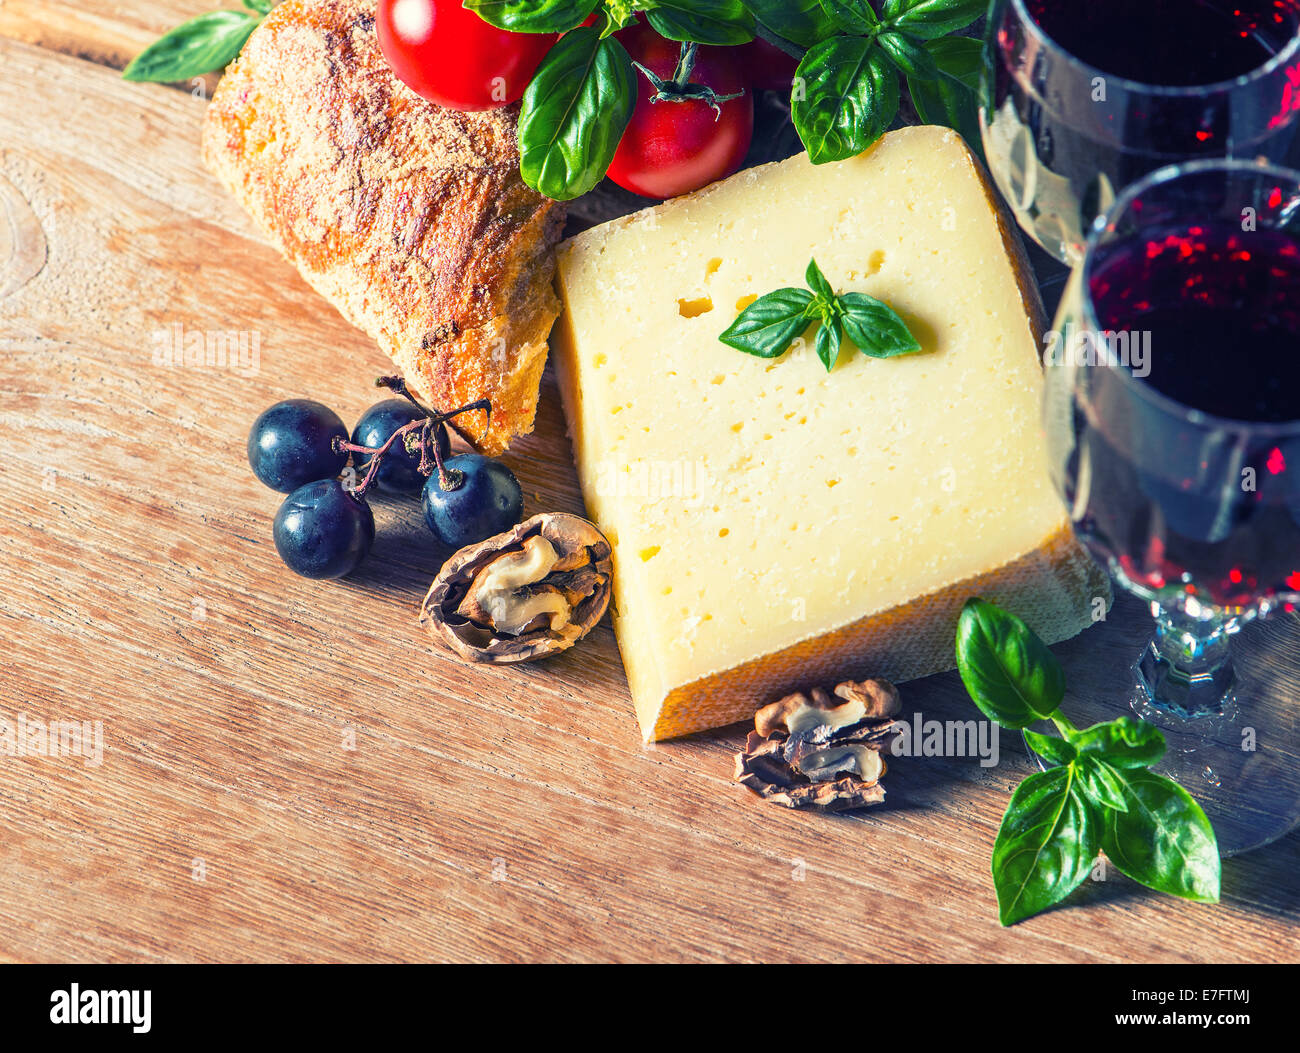 Käse mit Rotwein und Walnüsse. Essen und trinken. Retro-Stil getönten Bild Stockfoto